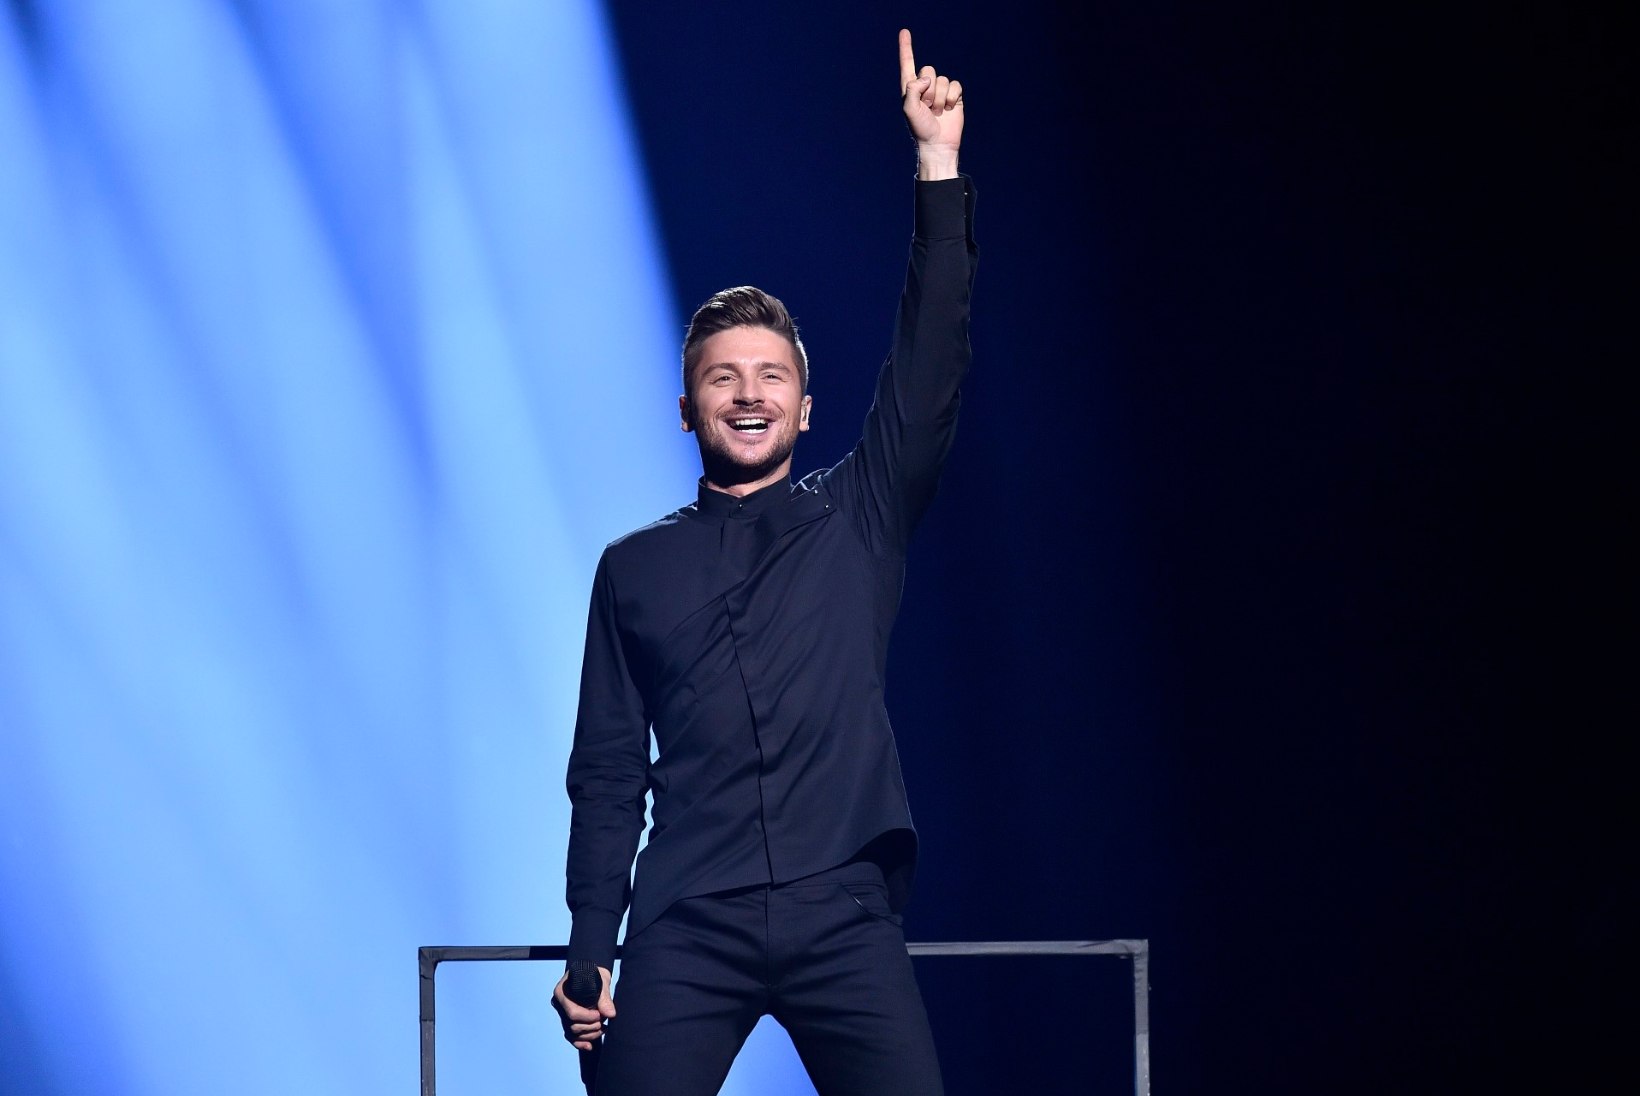 Tere tulemast tagasi! Venemaad esindab tänavu Eurovisionil taas Sergei Lazarev